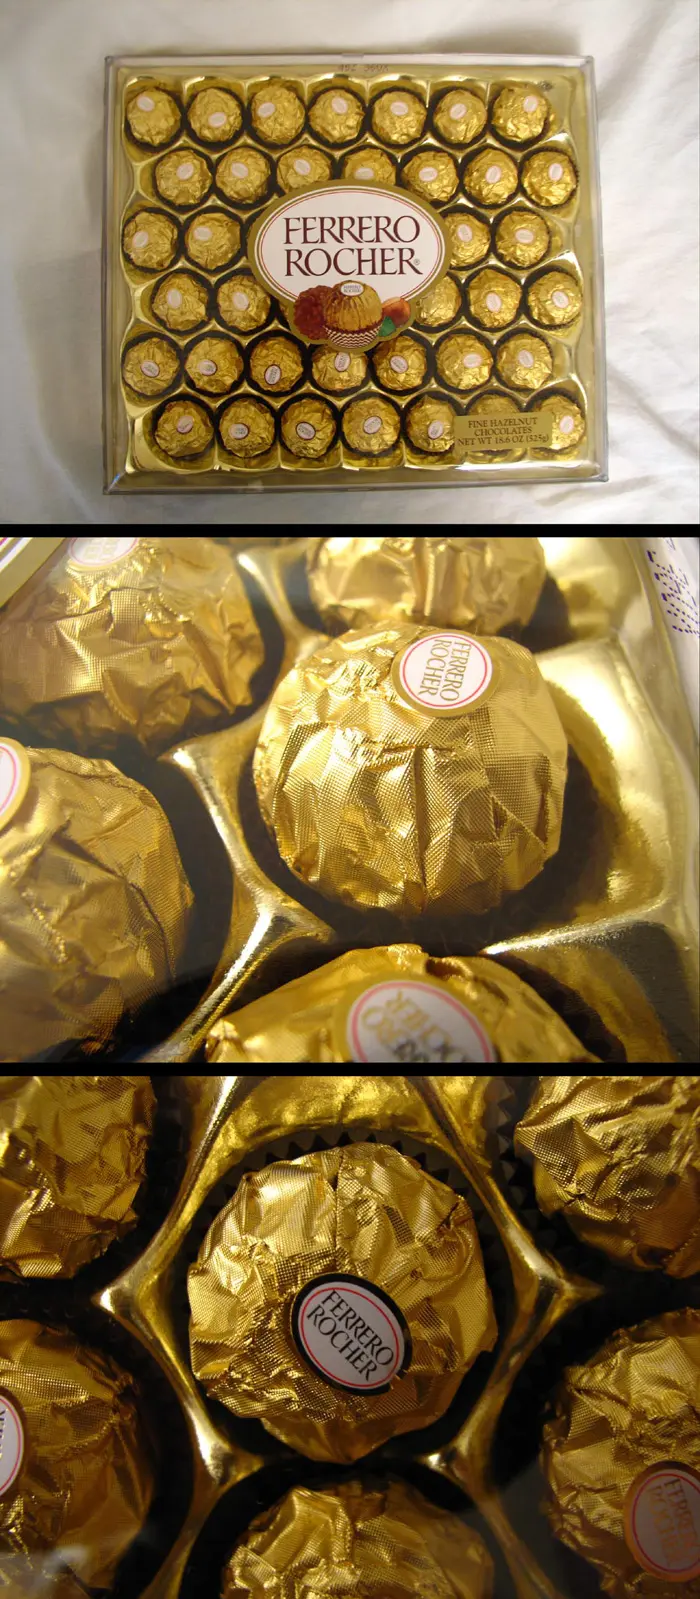 8,000 קופסאות של שוקולד פררו רושה